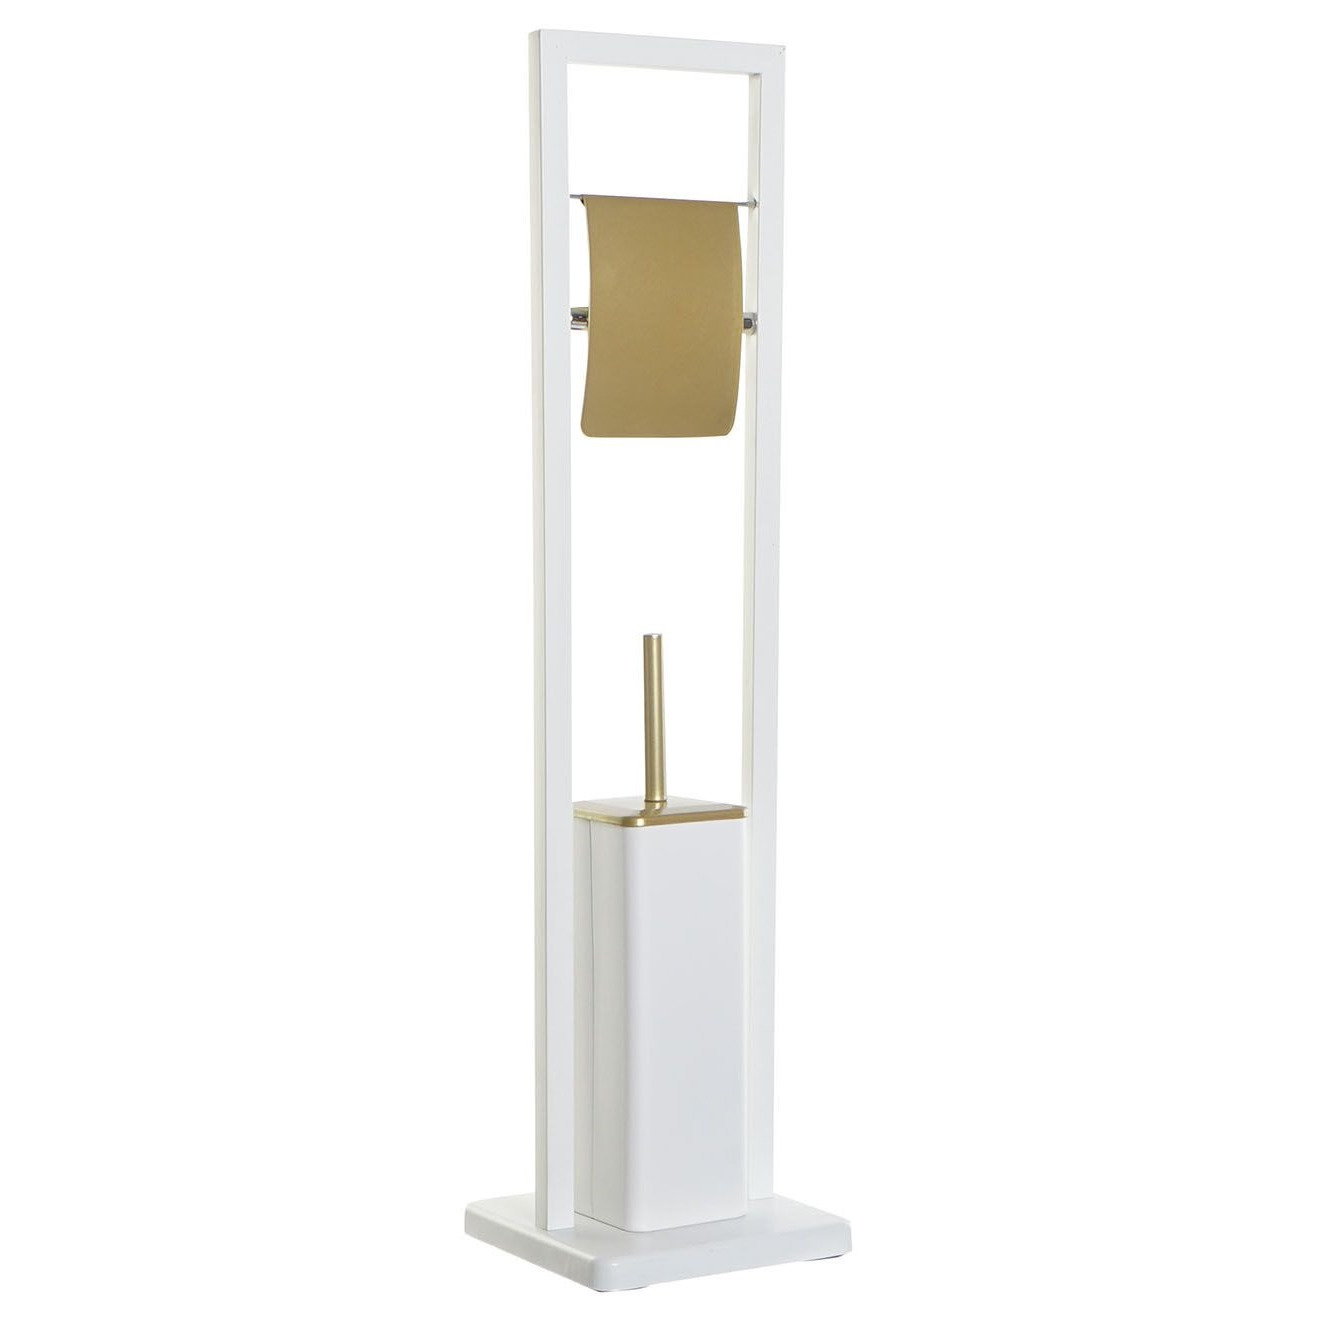 Toiletborstel met toiletrolhouder wit-goud metaal 80 cm